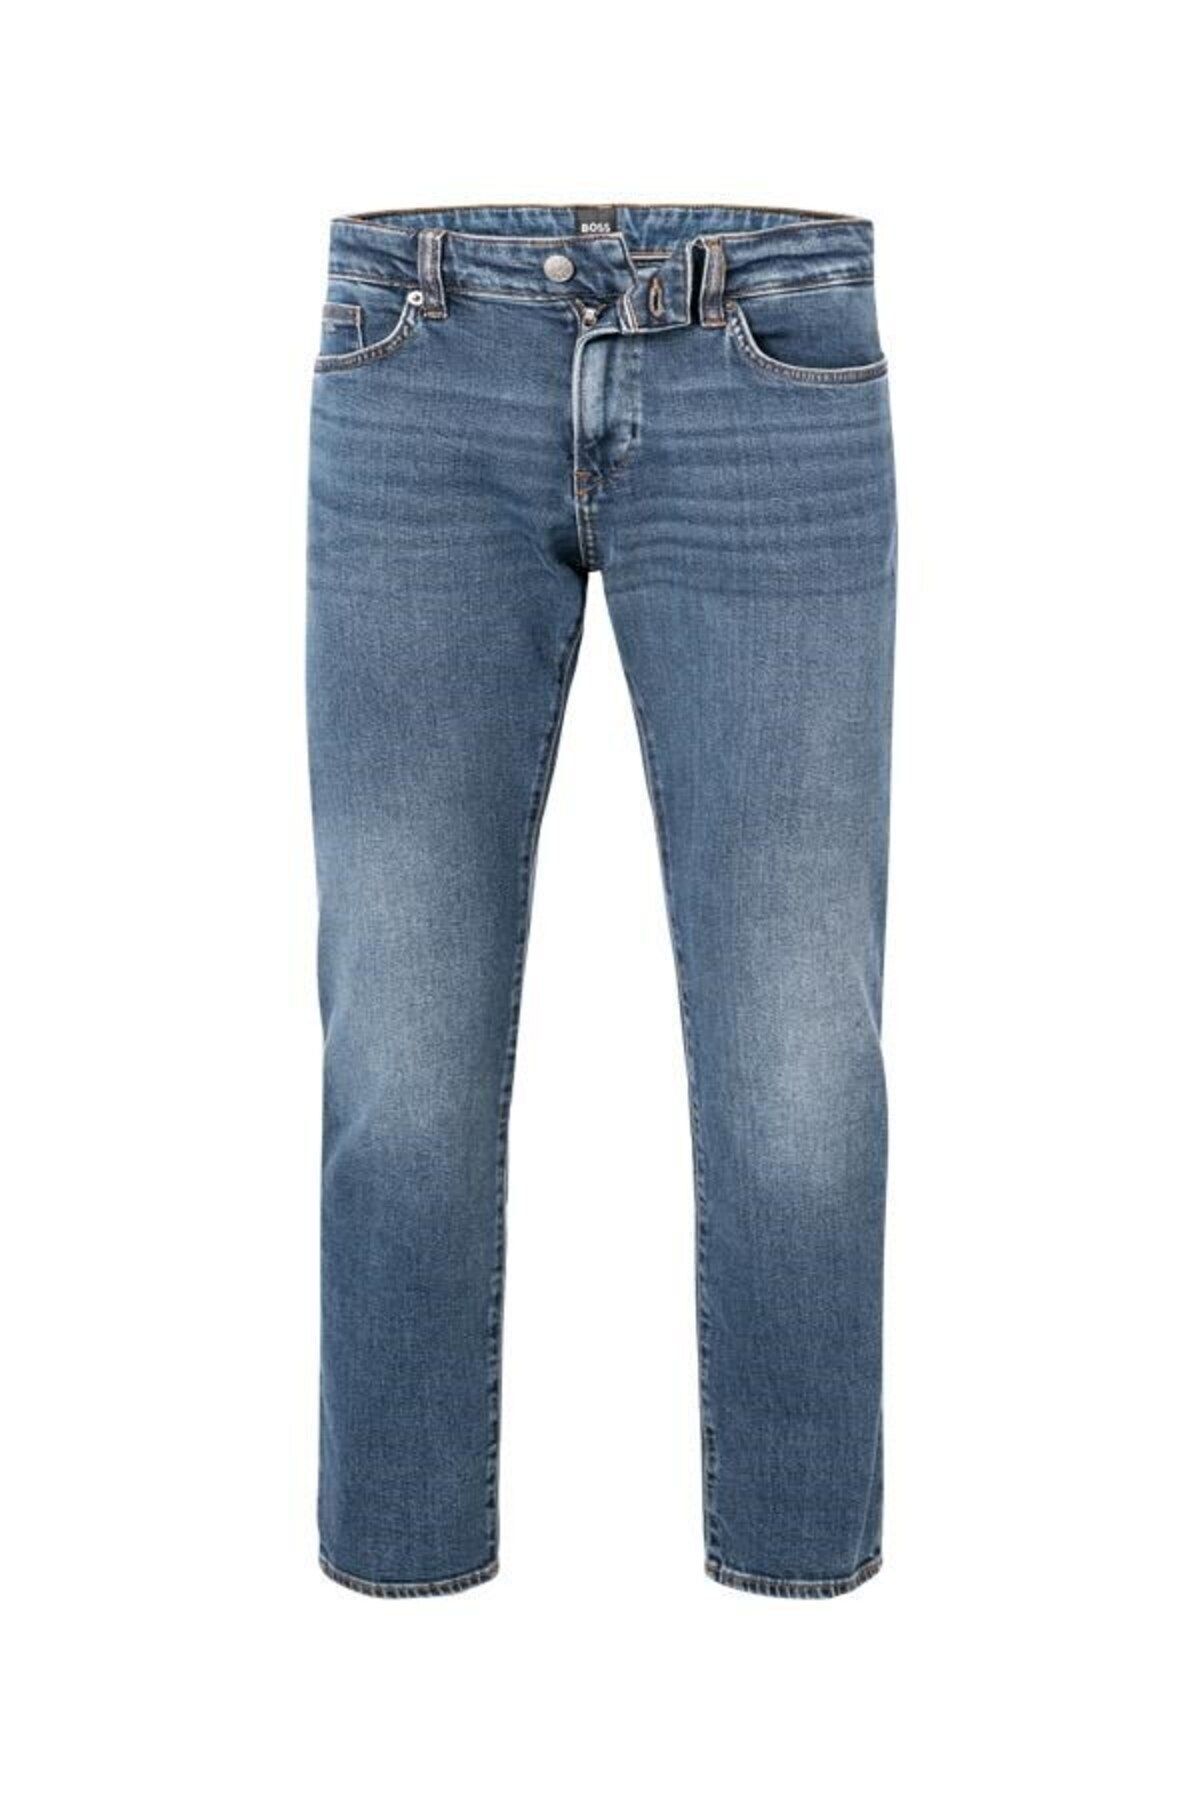 BOSS Erkek Denim Normal Belli Düz Model Günlük Kullanım Lacivert Jeans 50508402-423